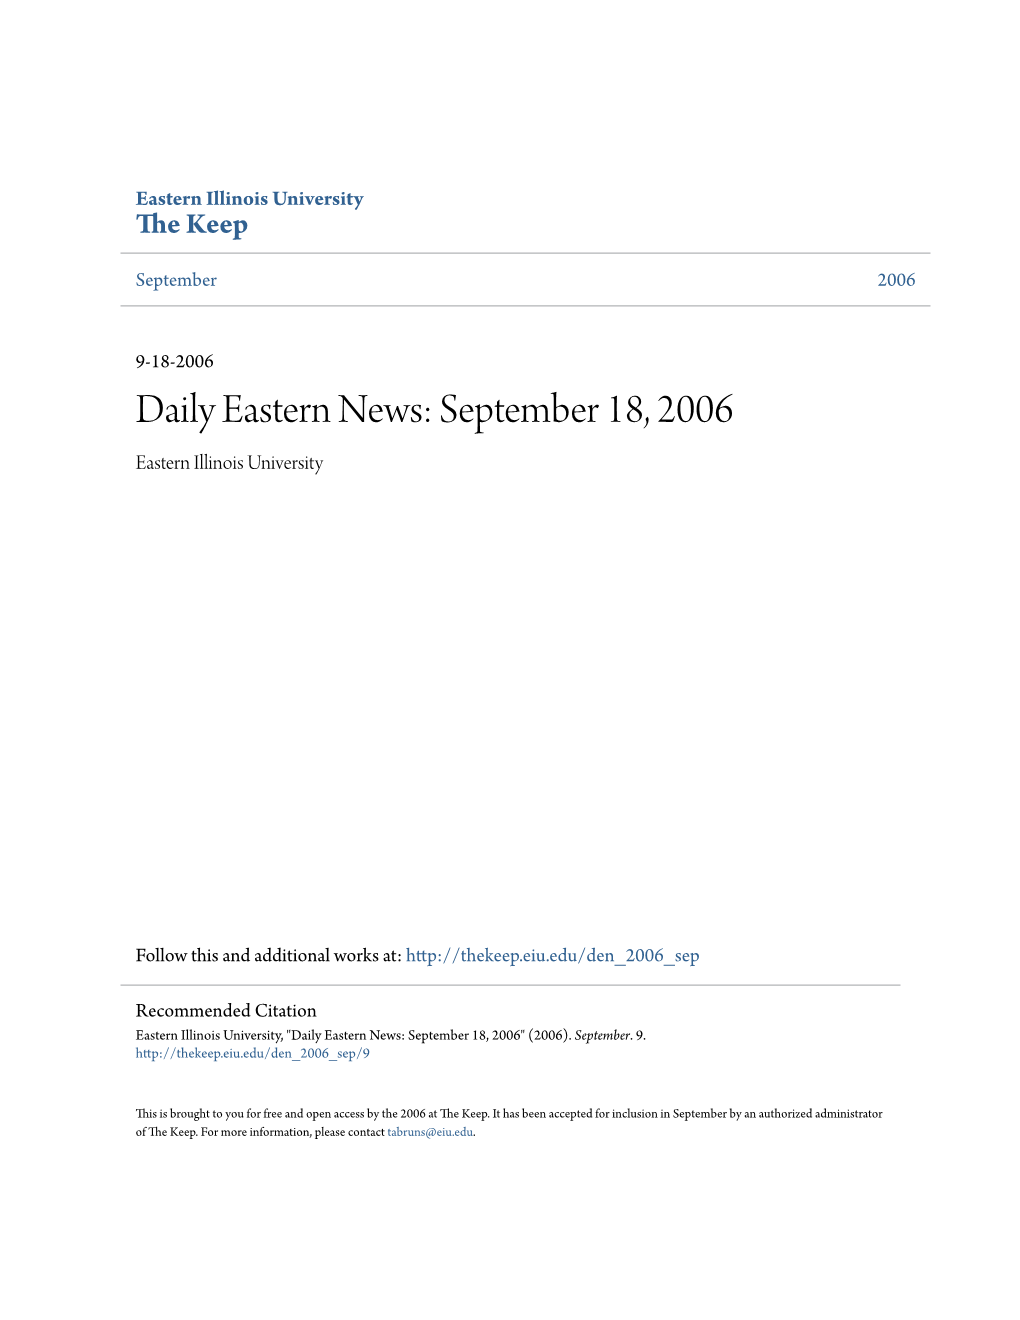 Daily Eastern News: September 18, 2006 Eastern Illinois University